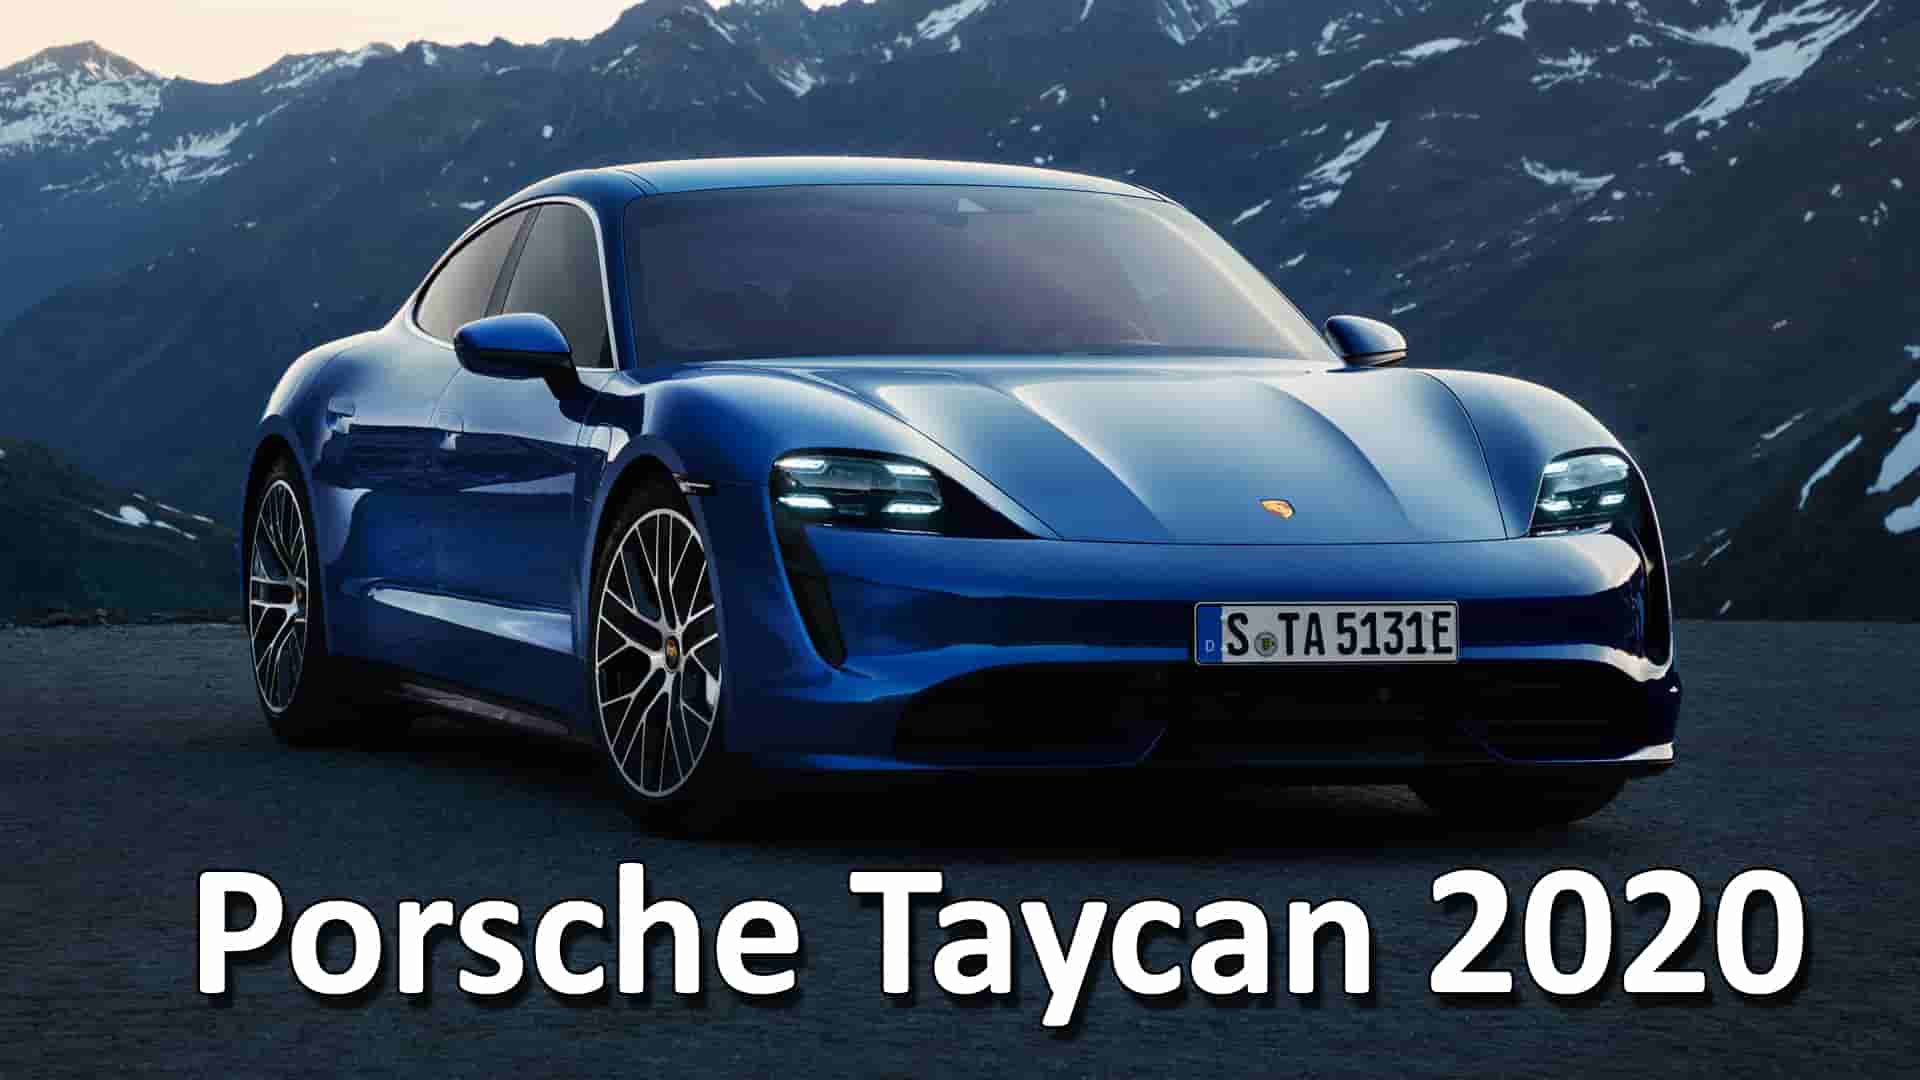 سيارة بورش تايكن Porsche Taycan تكتسح طراز Tesla S